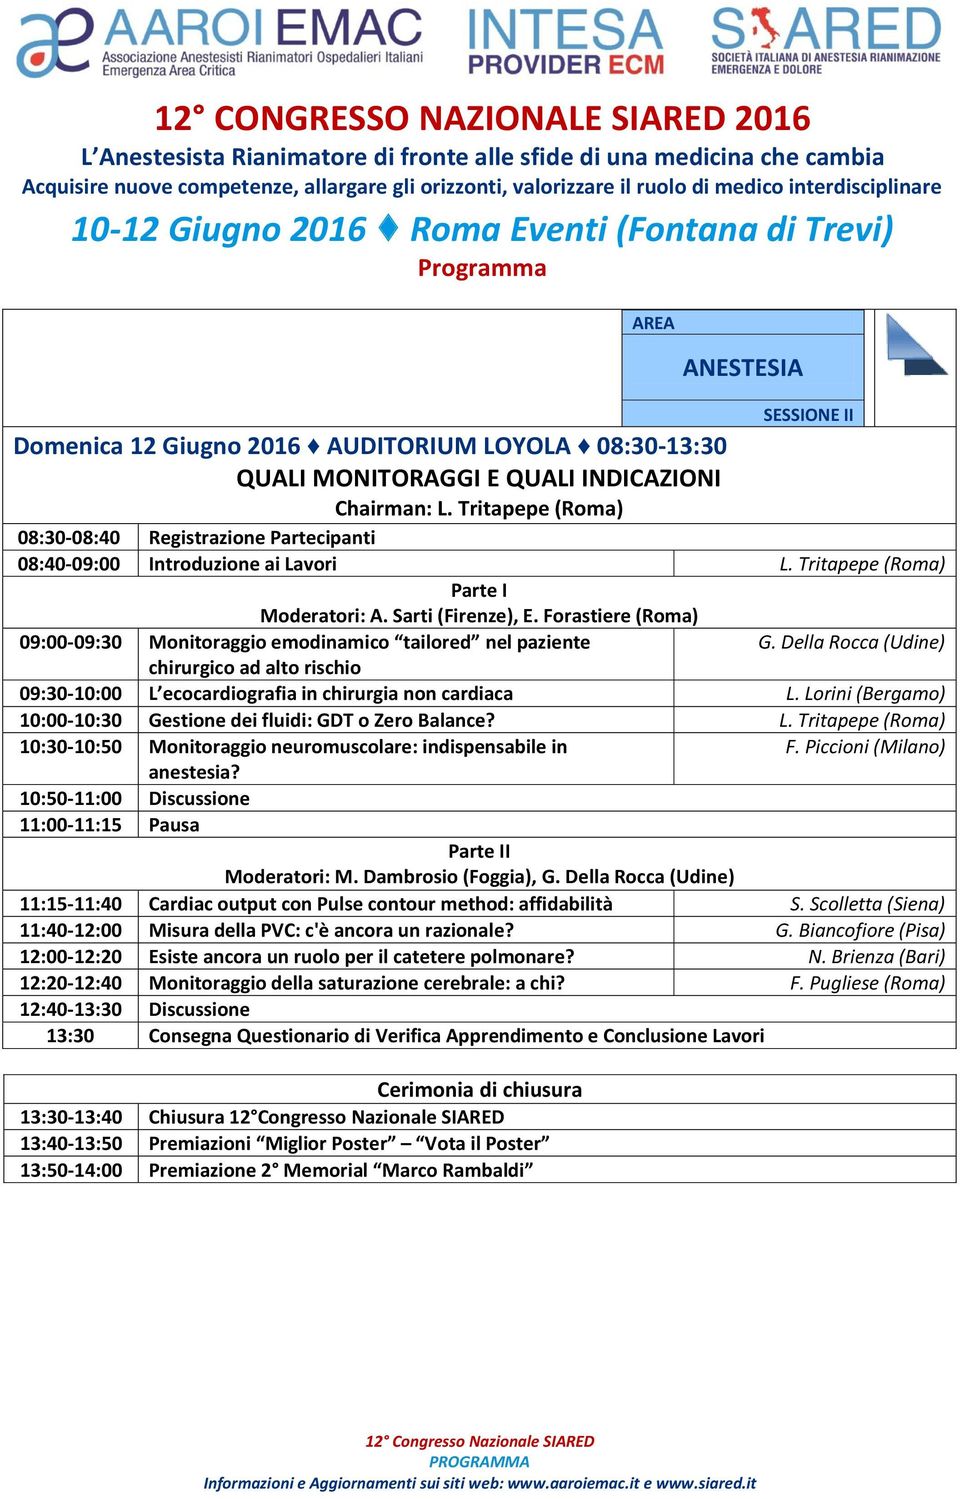 Forastiere (Roma) 09:00-09:30 Monitoraggio emodinamico tailored nel paziente chirurgico ad alto rischio G. Della Rocca (Udine) 09:30-10:00 L ecocardiografia in chirurgia non cardiaca L.